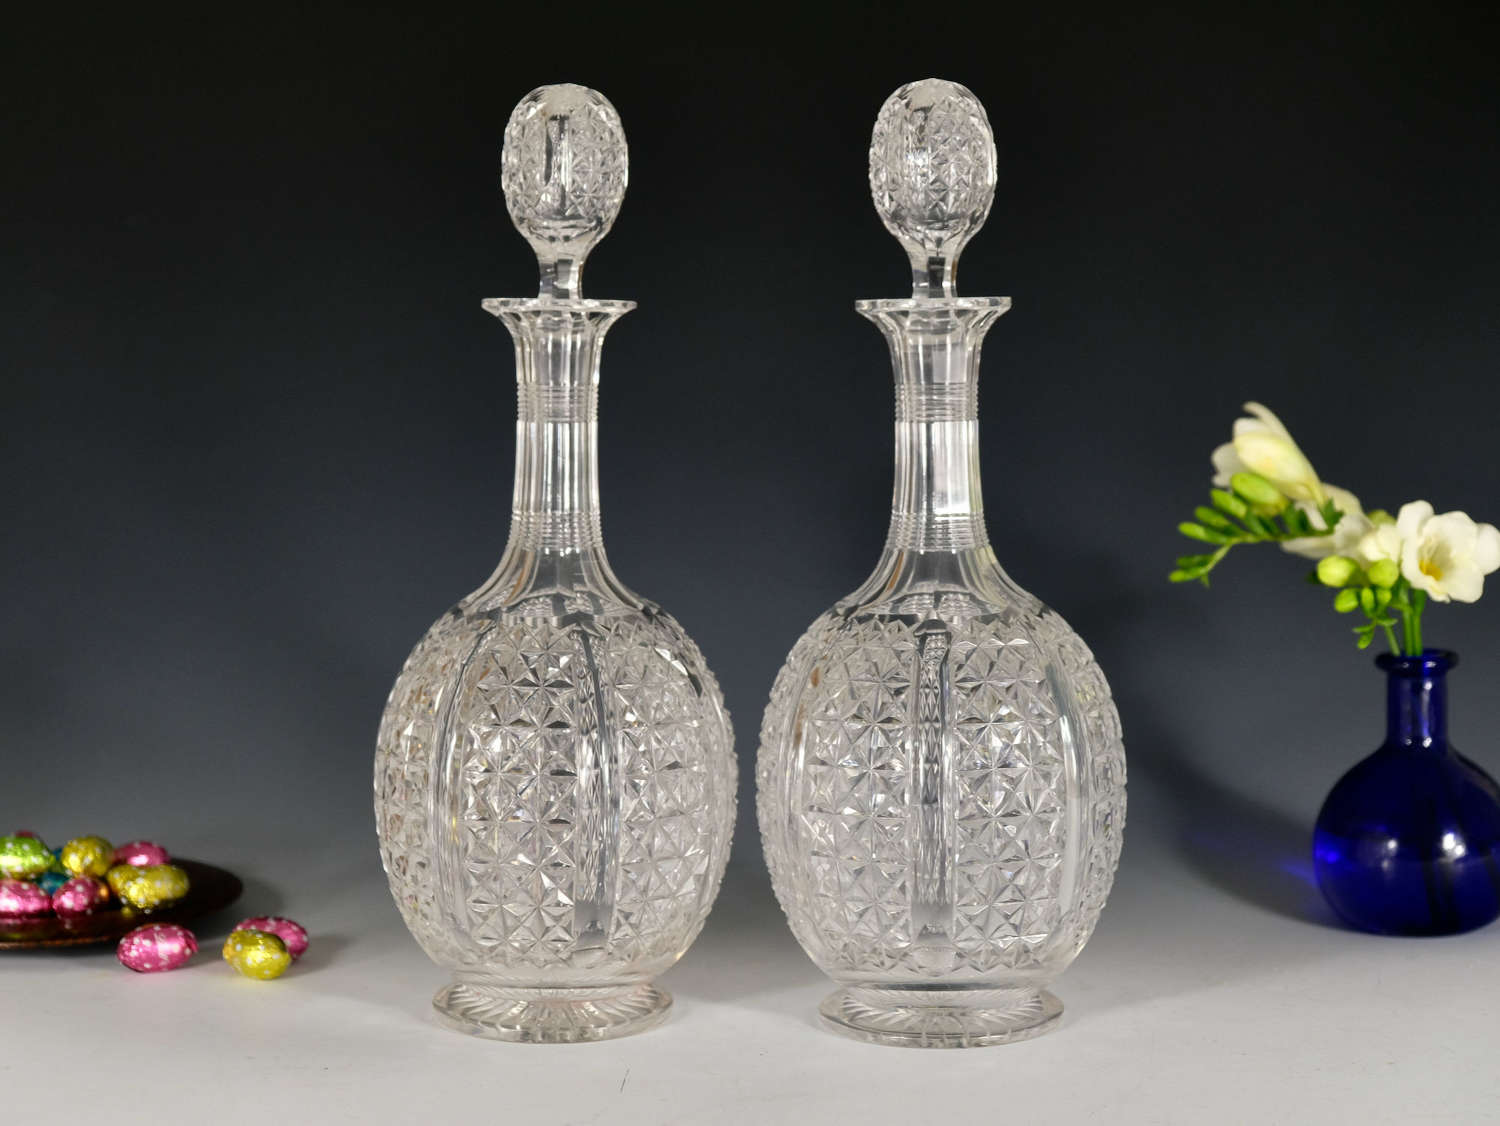 Antique glass - pair of antique decanters English c1880